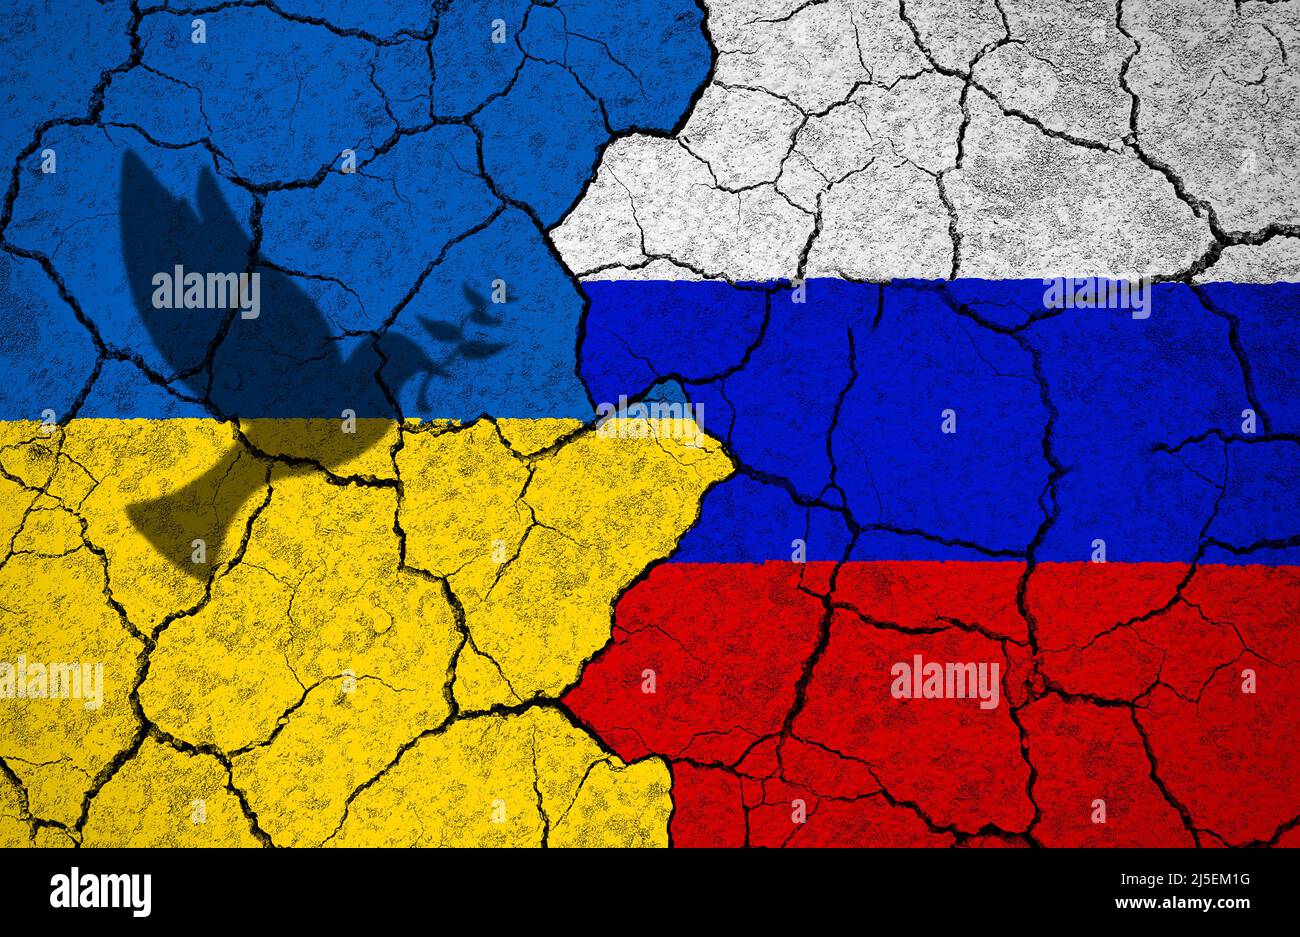 Ombra di colomba con ramo di ulivo che rappresenta la pace sulla bandiera Ucraina dipinta su muro spaccato verso la bandiera russa. Abbiamo bisogno di pace e non di guerra. Foto Stock